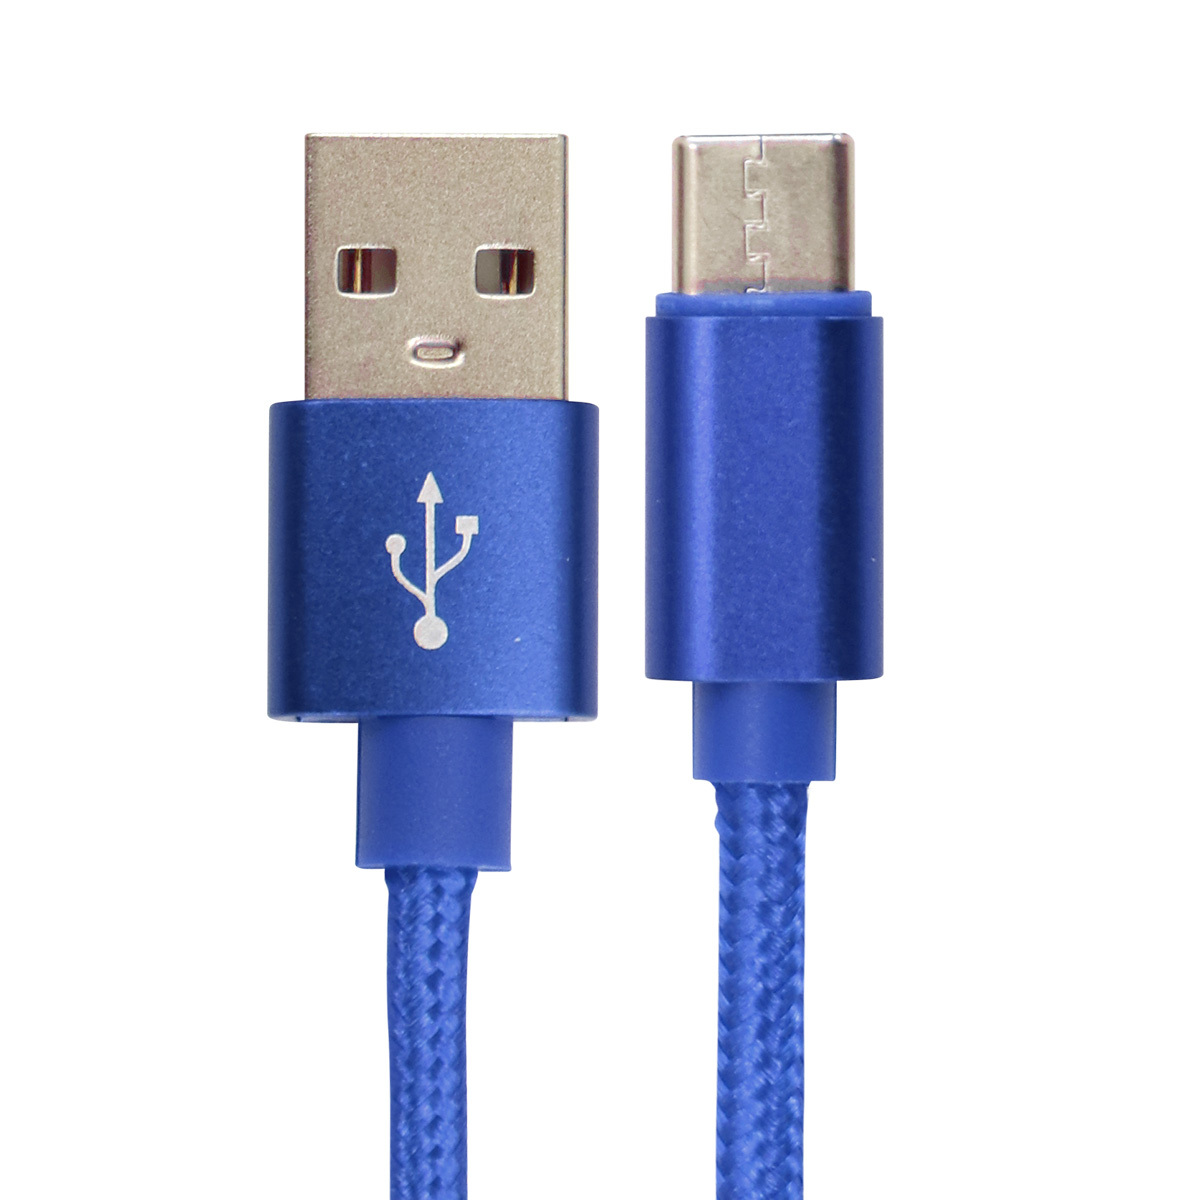 USB Type-C 充電ケーブル 長さ0.25m 0.5m 1m 1.5m 急速充電 iPhone 強化素材 データ転送 type-c Android USB ケーブル タイプC 充電 コード 充電器